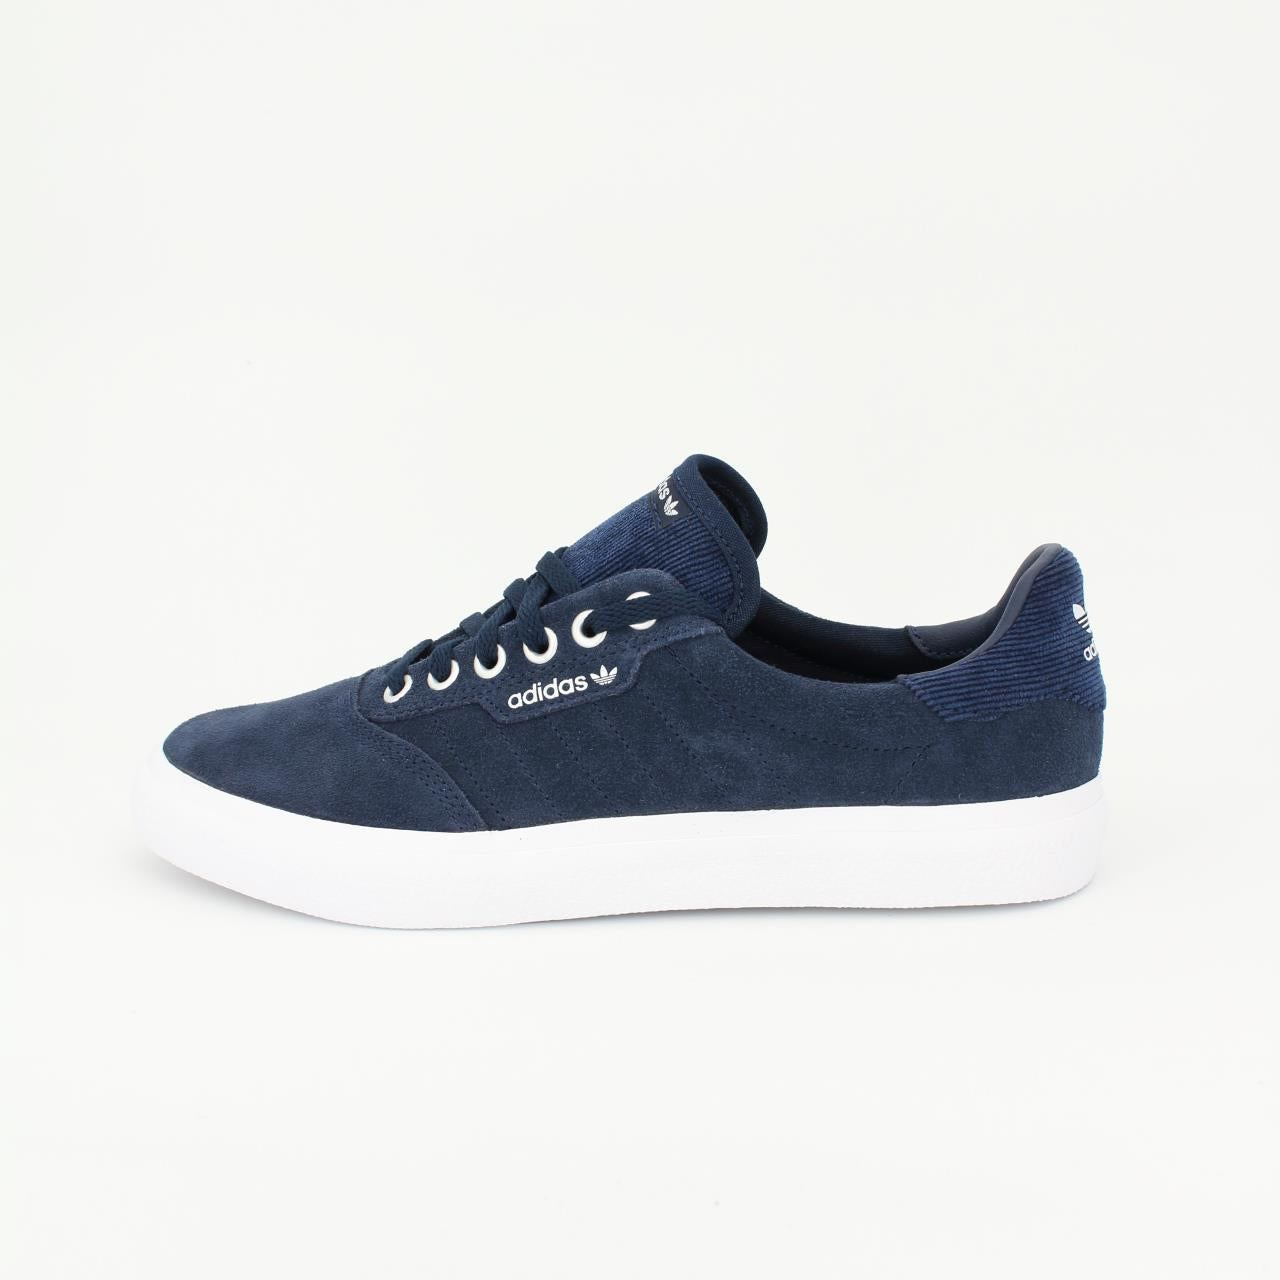 Adidas Originals 3Mc Herren Schuhe Freizeitschuhe Leder Sneaker Blau EE6080 UK 6,5 // 40